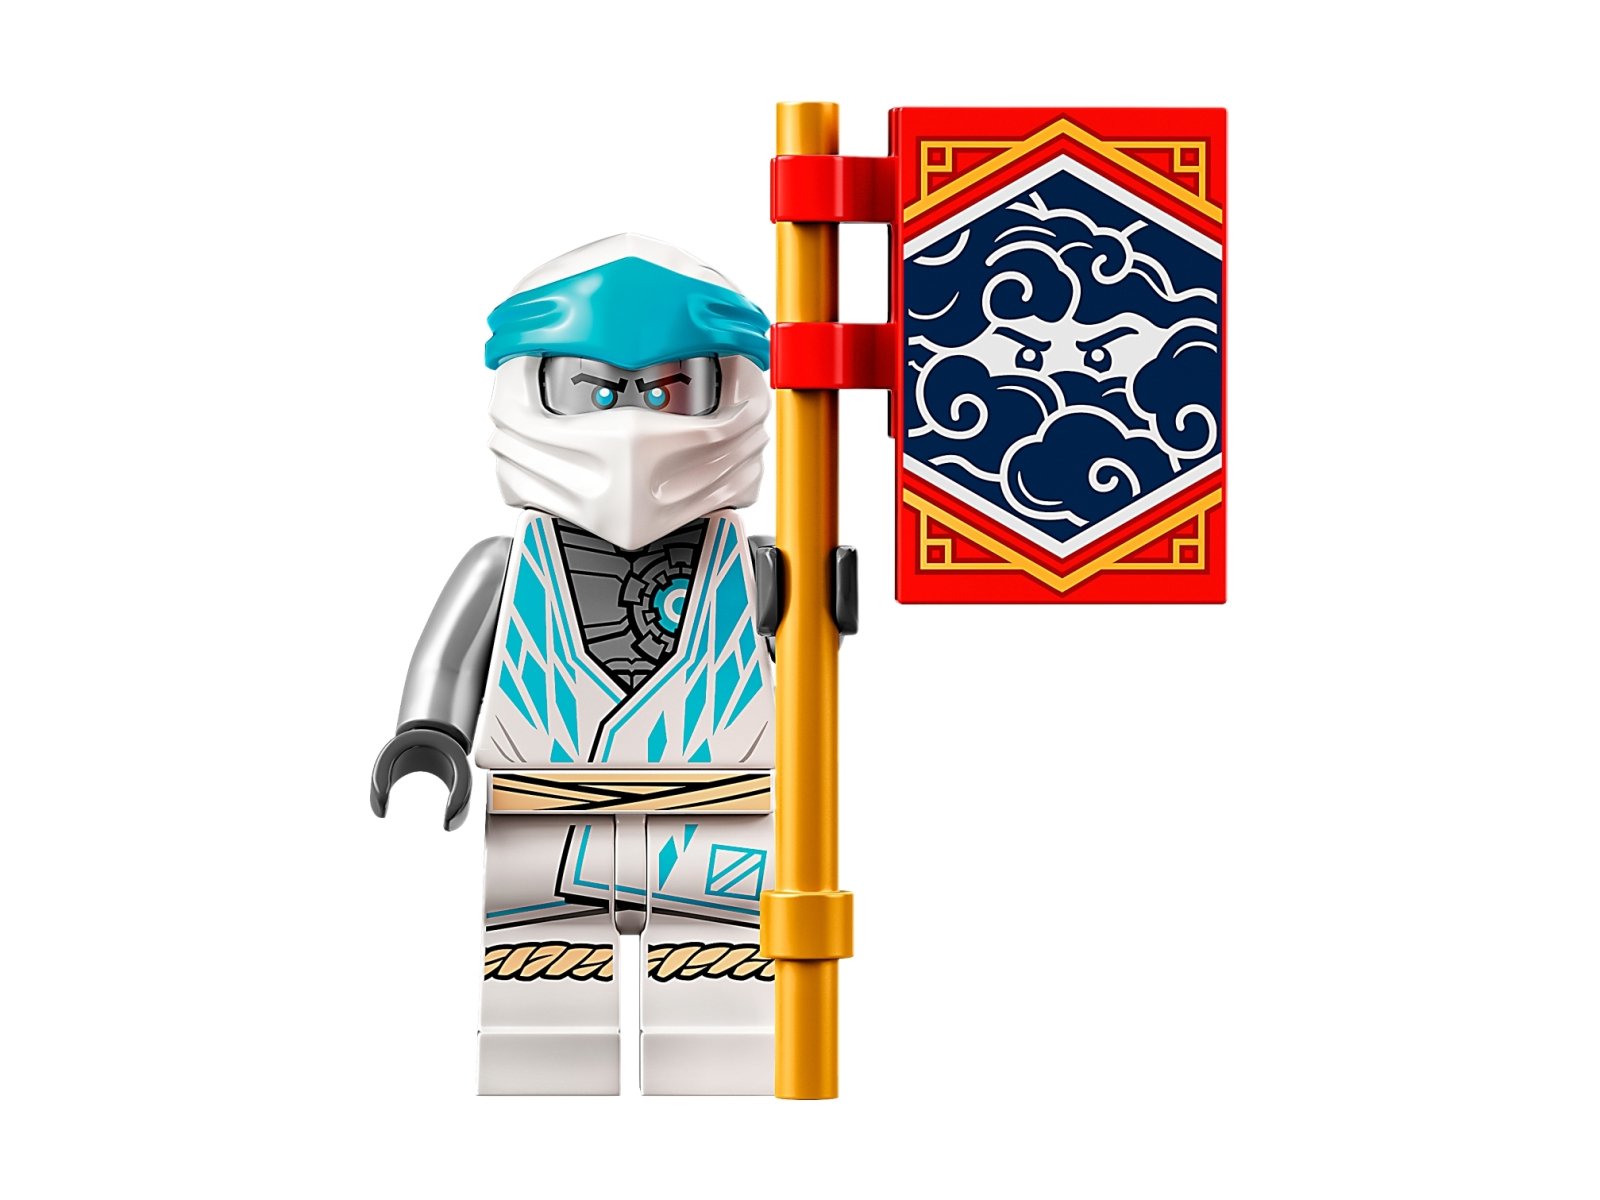 LEGO 71761 Ninjago Energetyczny mech Zane’a EVO